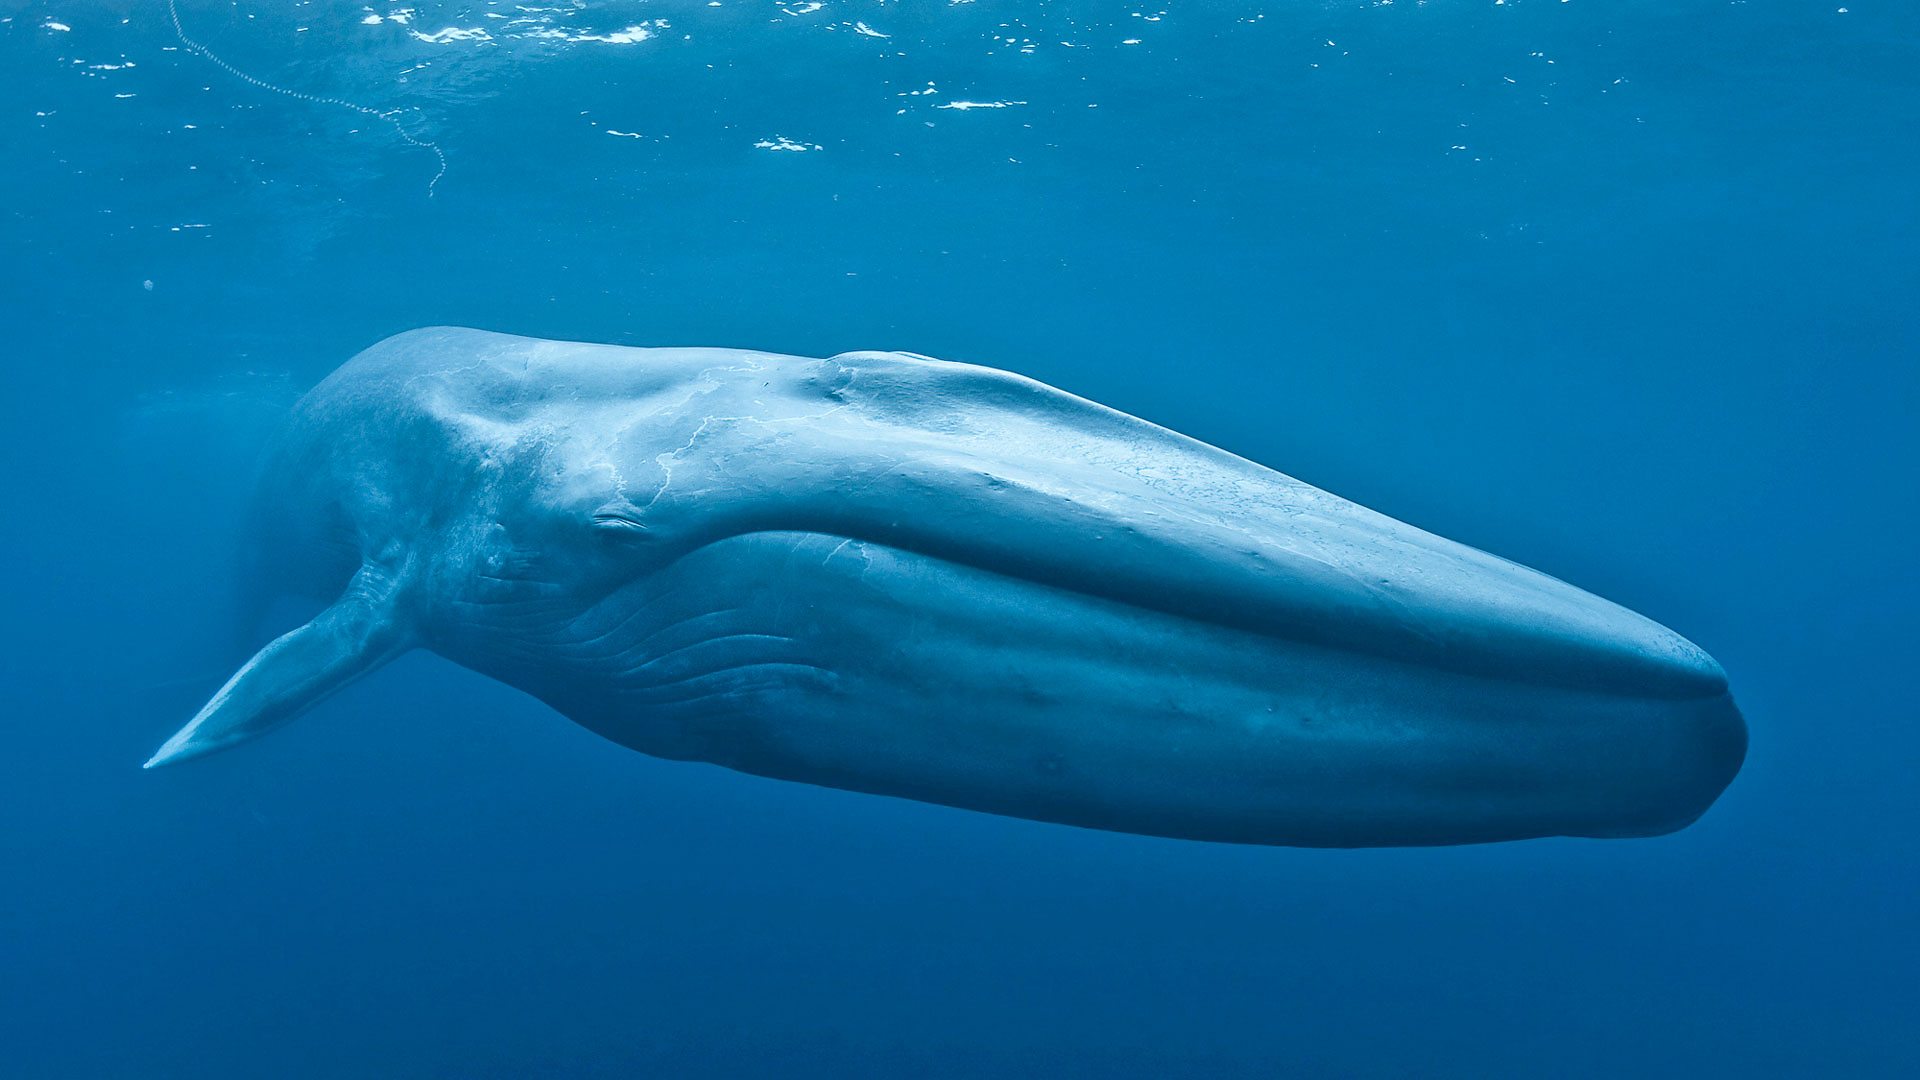 يزداد وزن مولود الحوت الأزرق حوالي ٩٠ كجم يوميا، فكم كجم تقريبا يزداد وزنه في الساعة؟